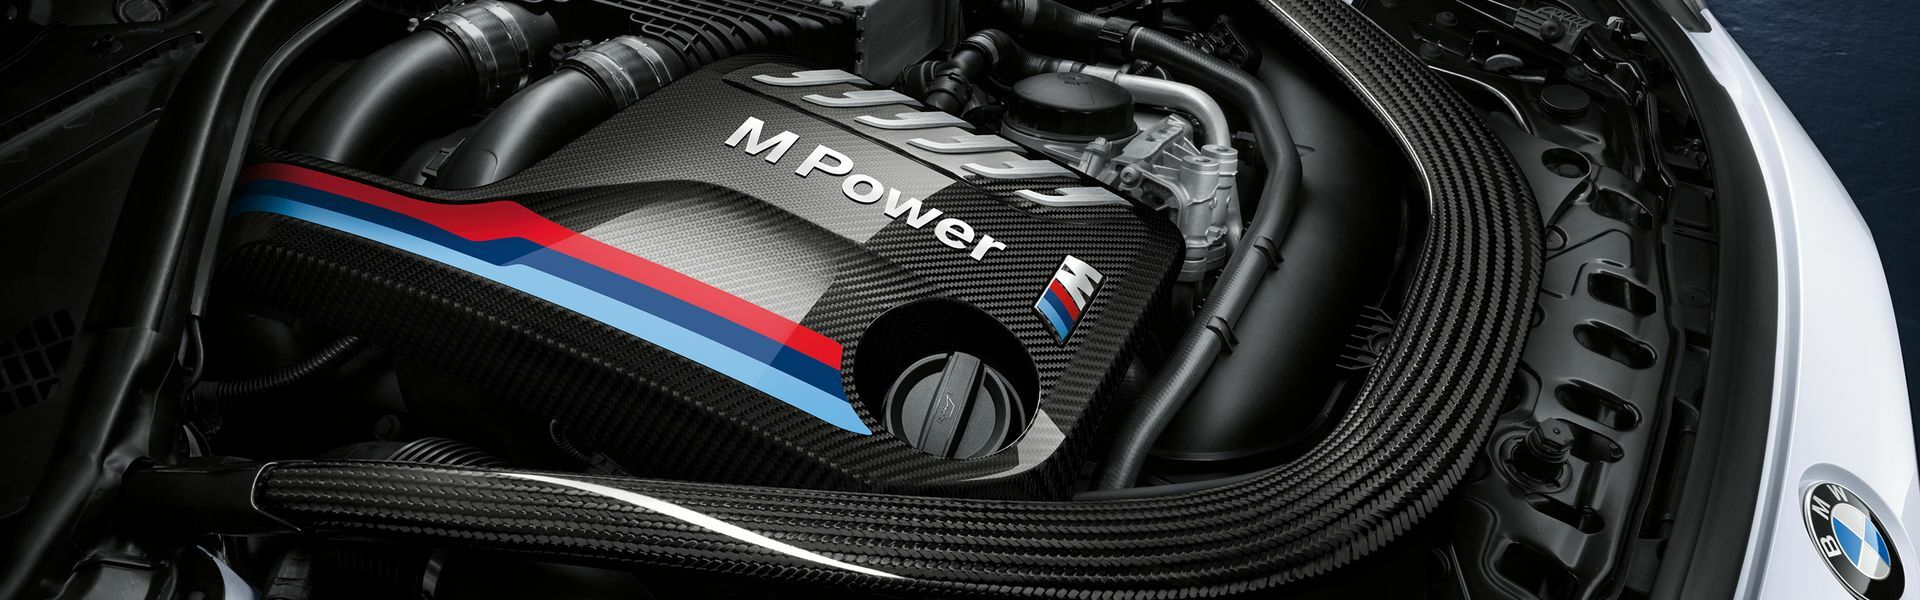 Zvýšení výkonu/ Softwarové úpravy/ Drobné performance díly pro automobil Porsche 911 Turbo/Turbo S 991